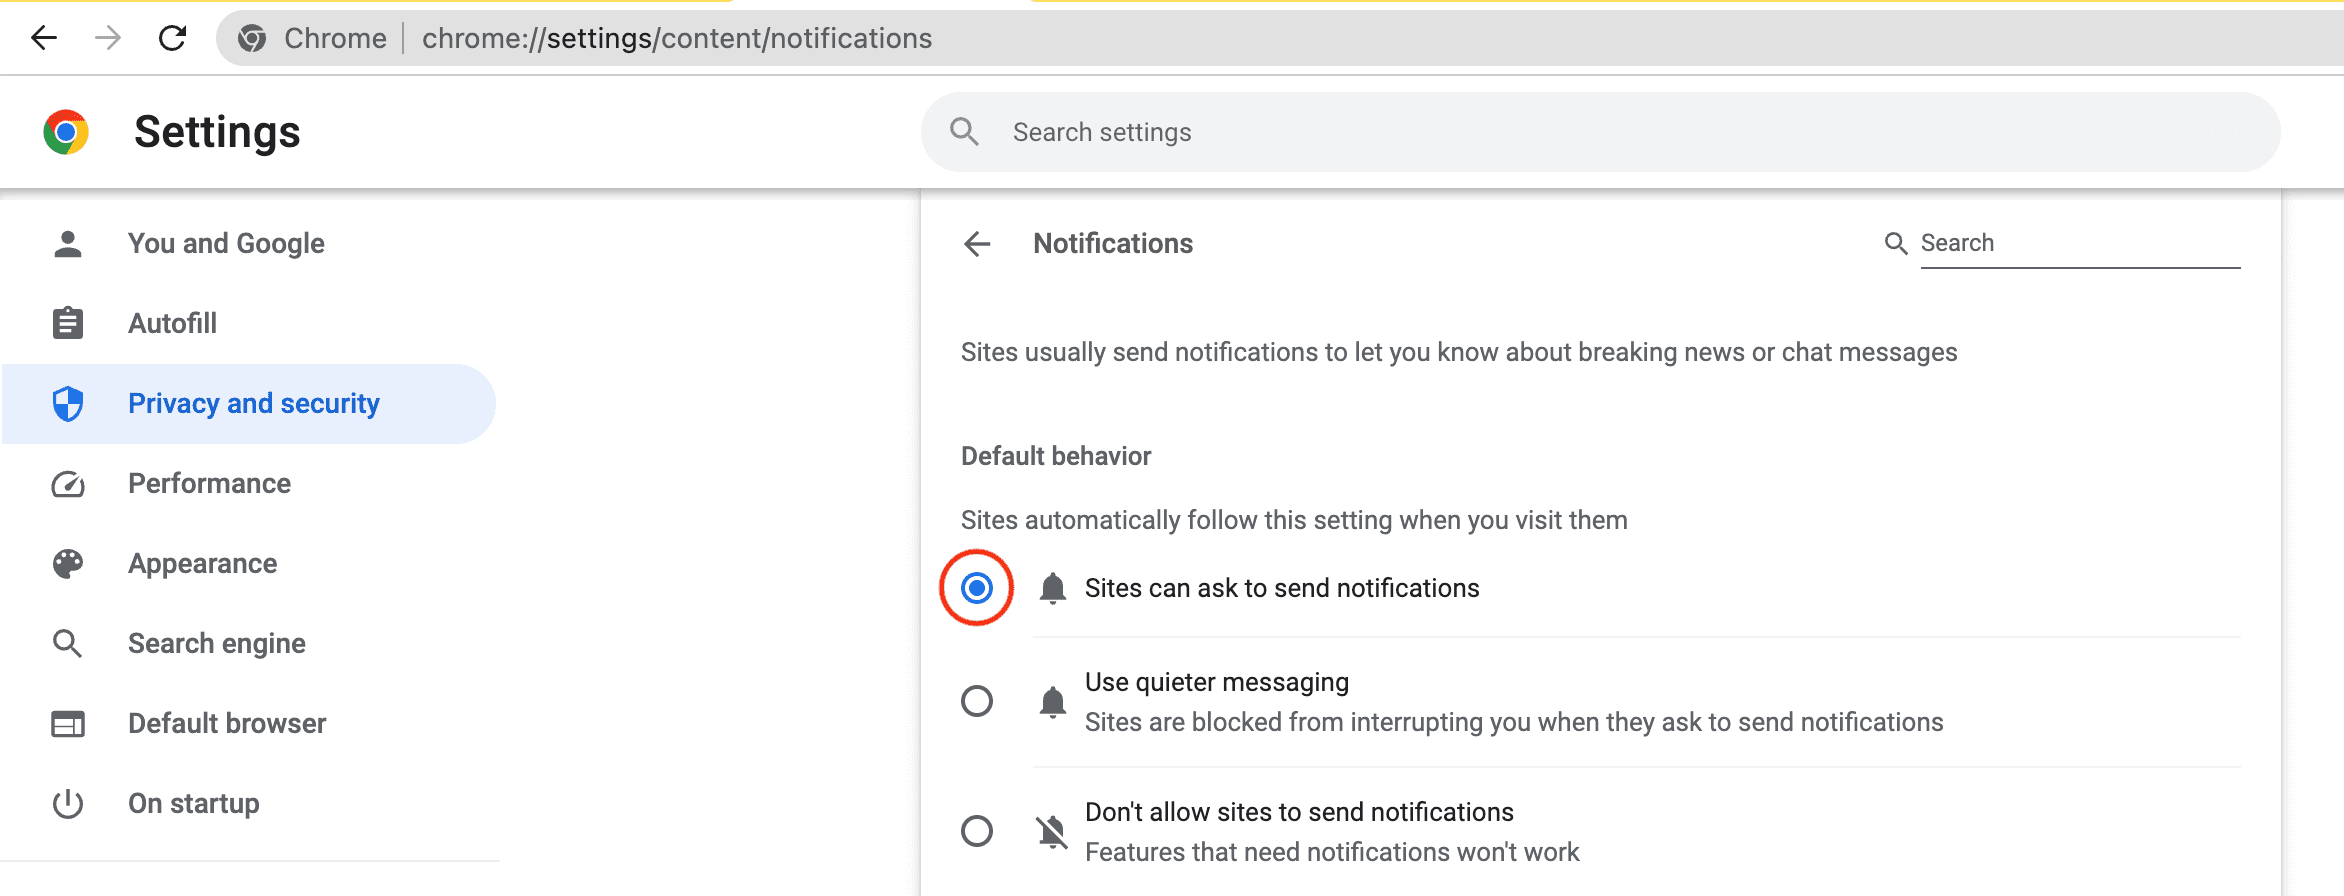 Les sites peuvent demander à envoyer des notifications dans Chrome